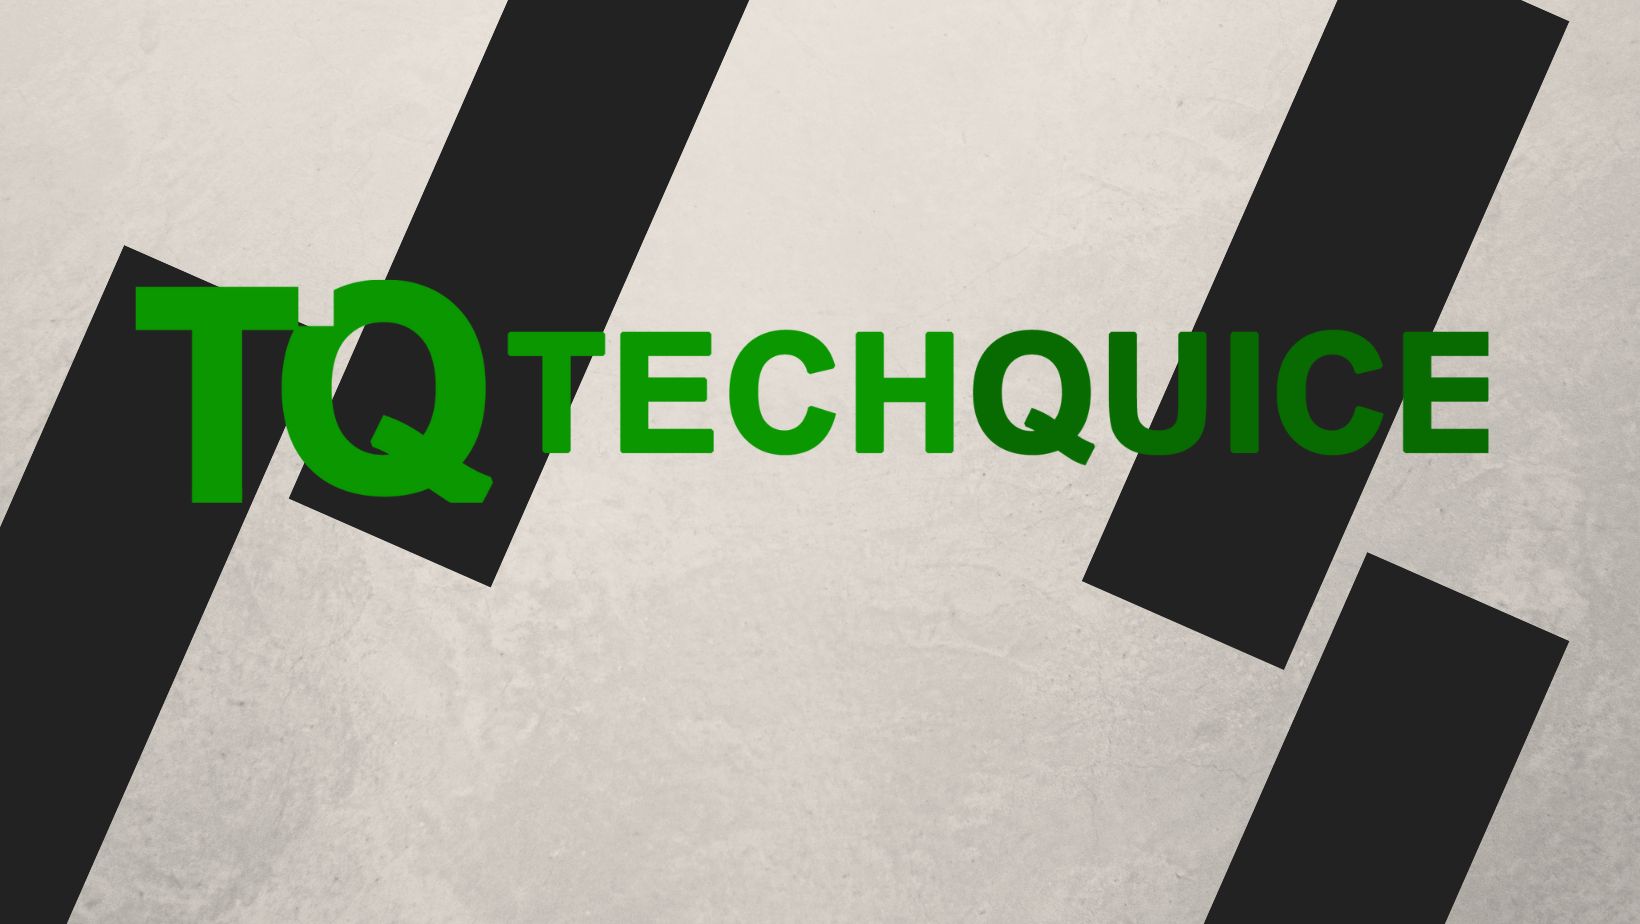 TechQuice